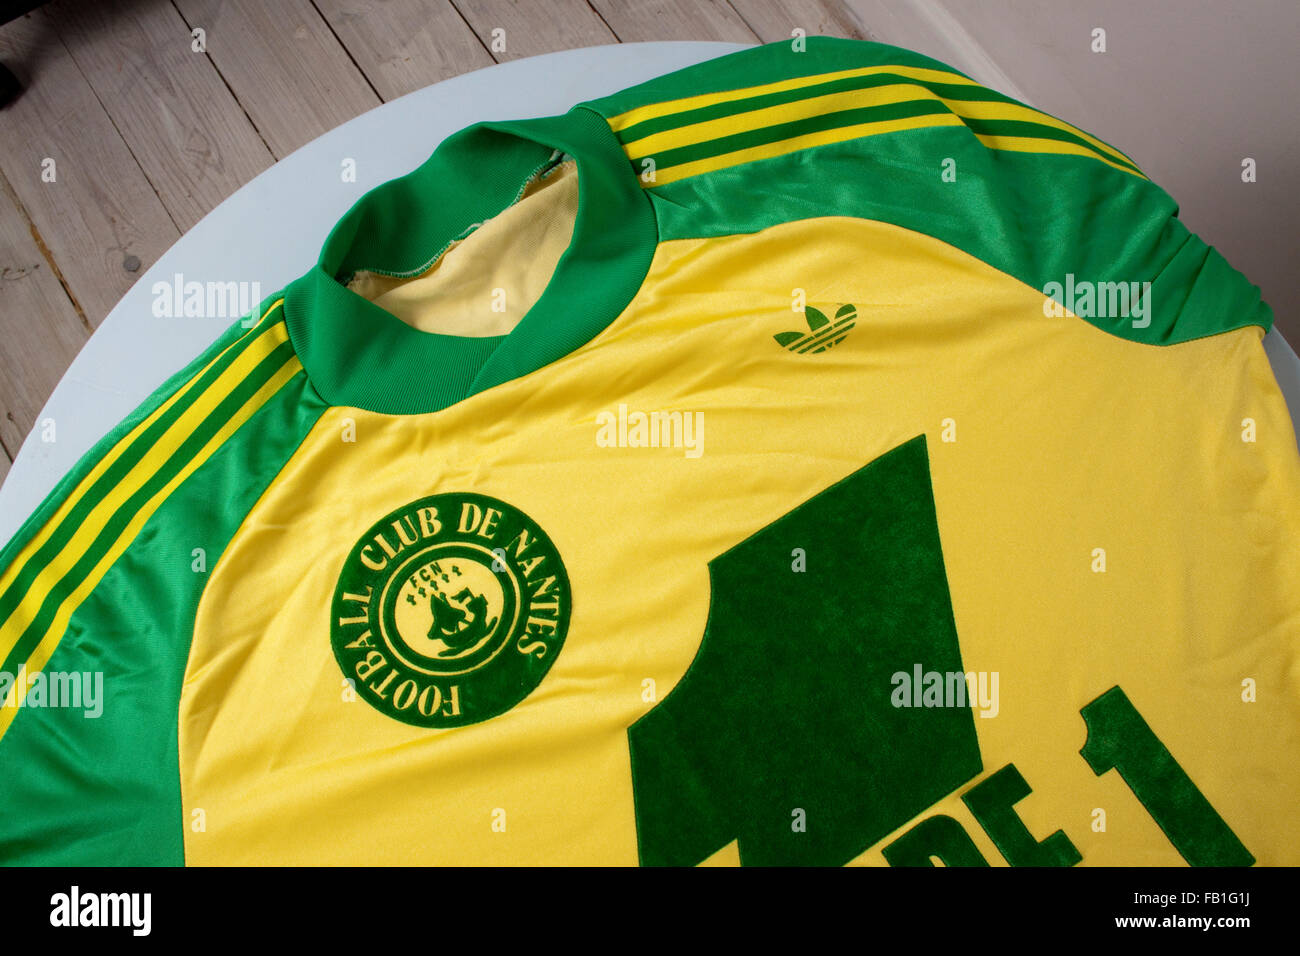 1980 vert et jaune maillot de football pour l'équipe française des FC  Nantes Photo Stock - Alamy